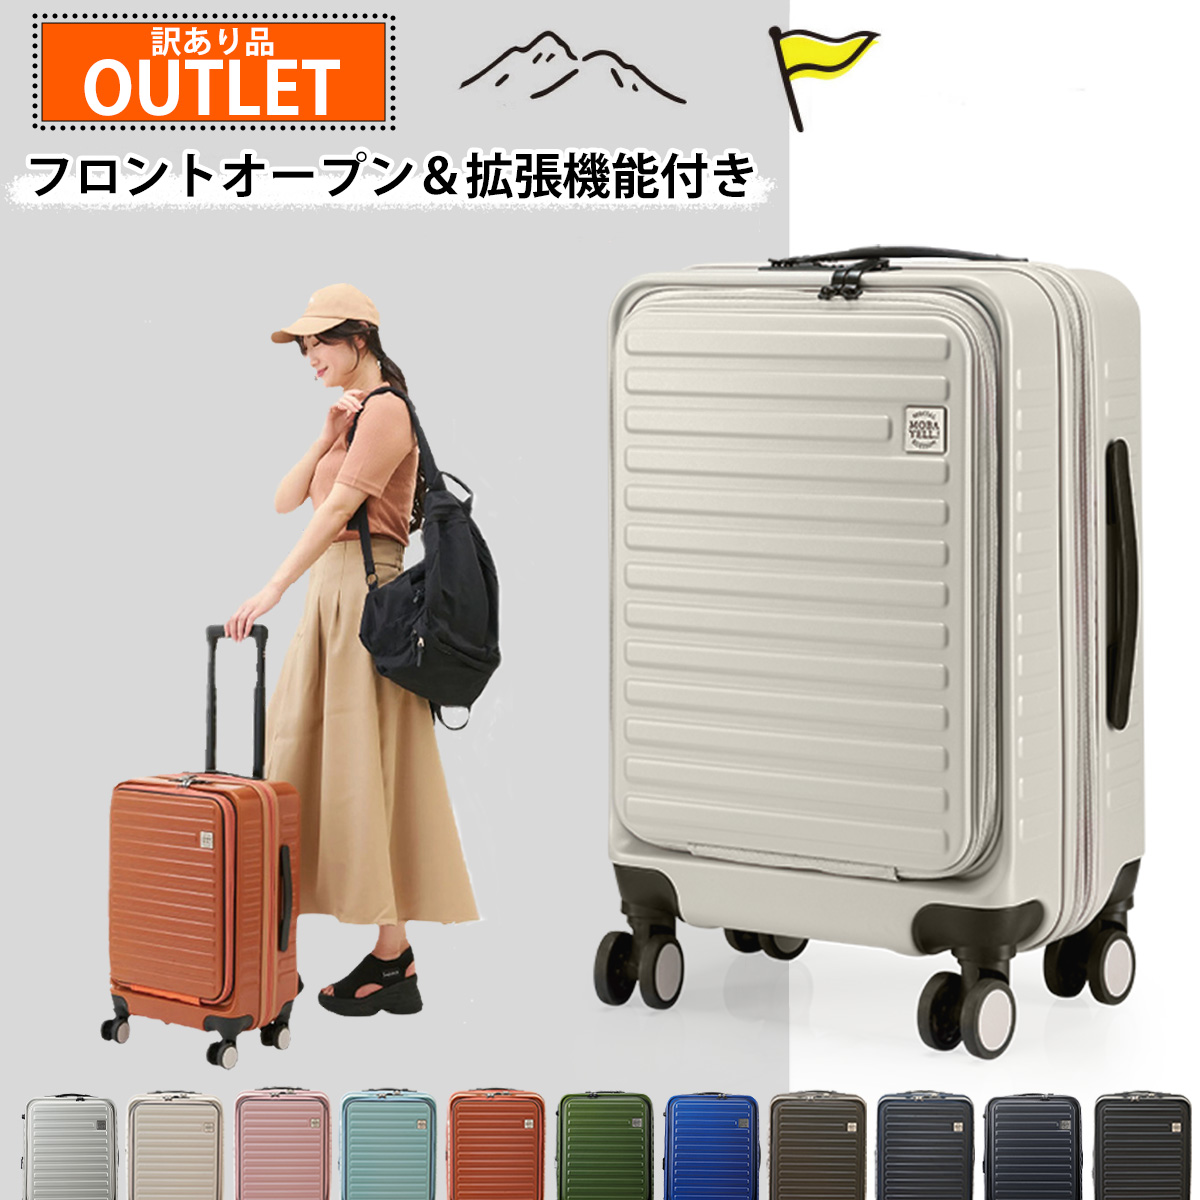 S キャリーケース スーツケース フロントオープン 拡張機能 機内 流行